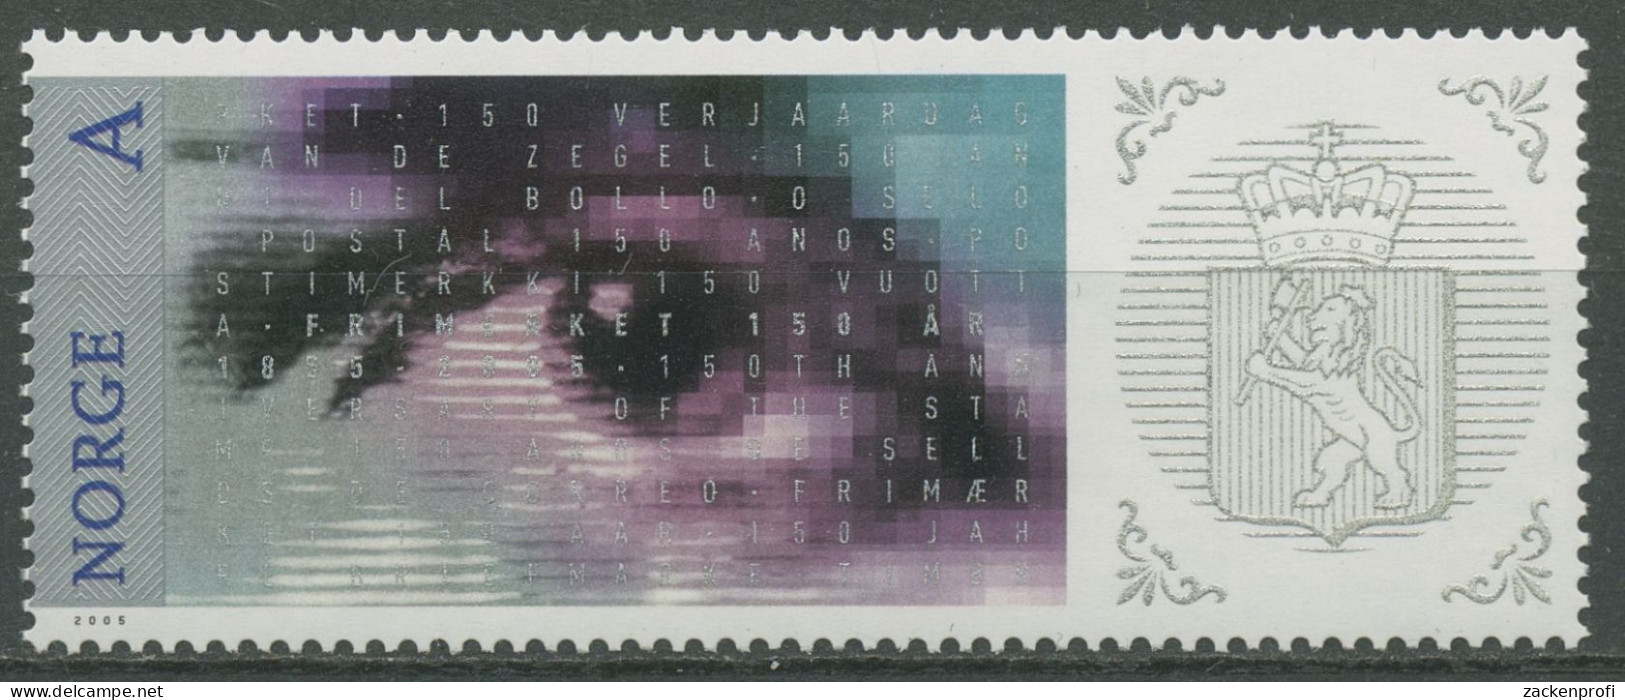 Norwegen 2005 Briefmarken Motiv MiNr.1, Auge 1554 Postfrisch - Neufs